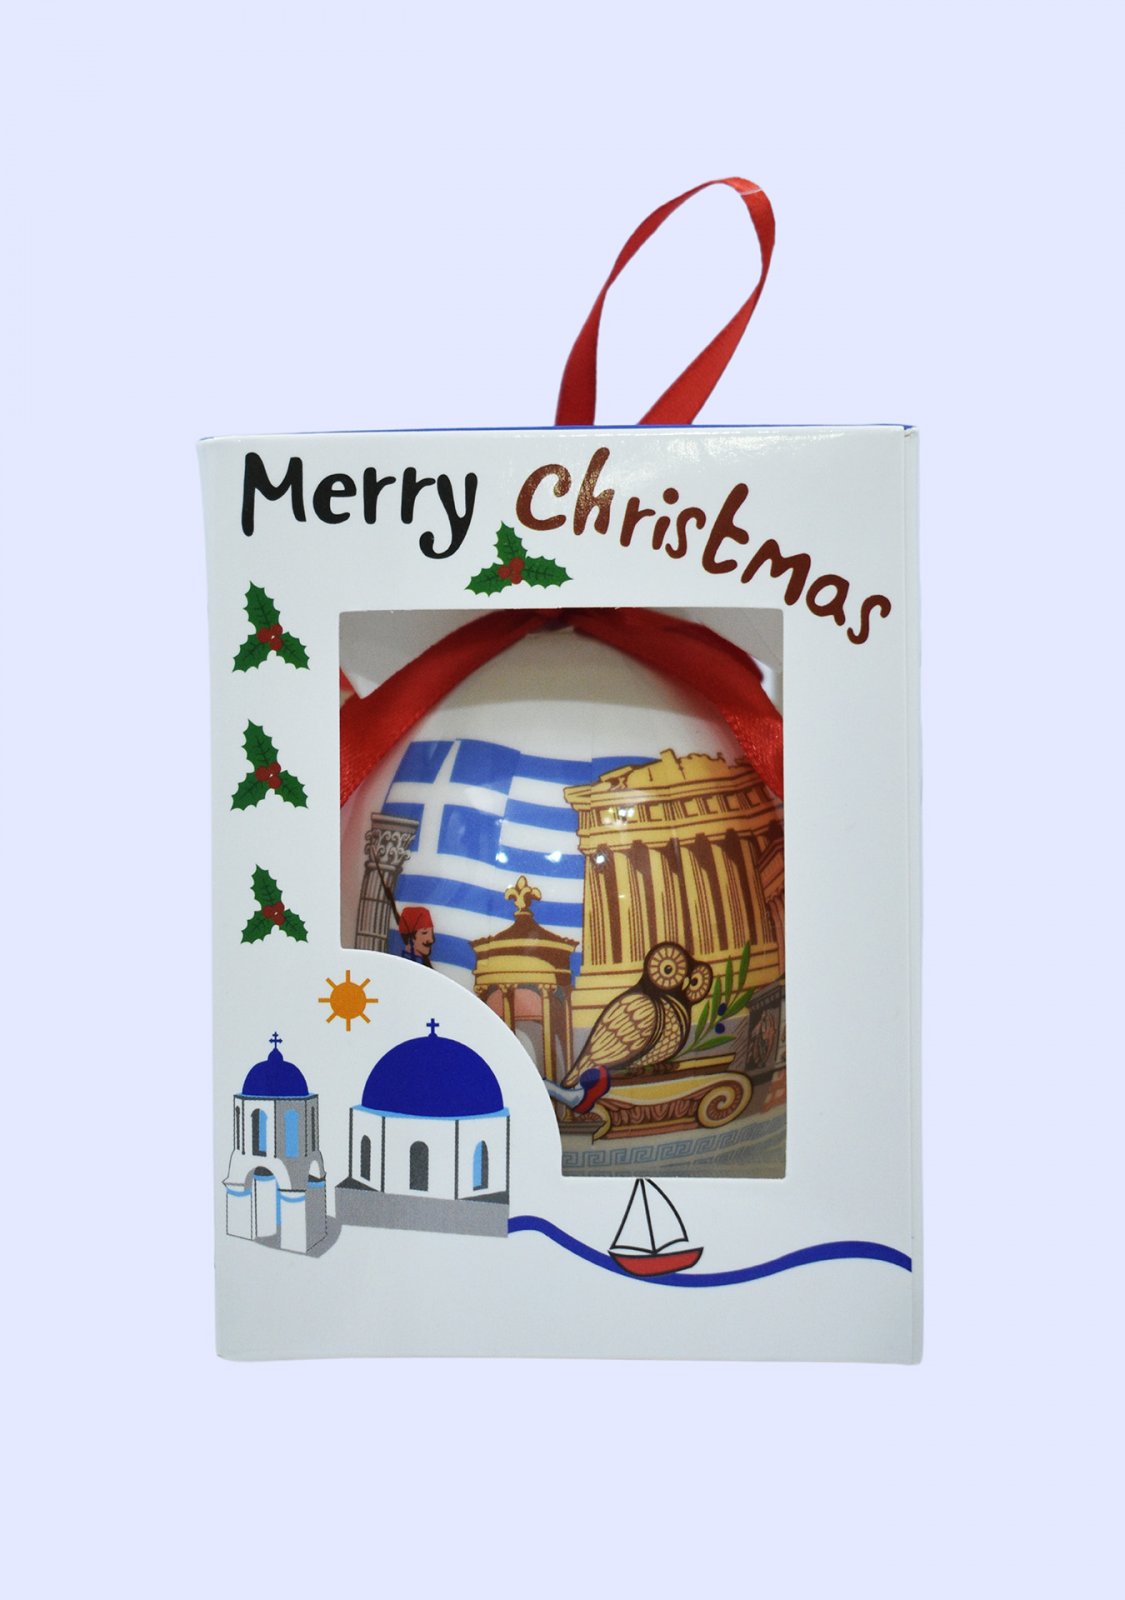 Christmas Tree Ball Parthenon Acropolis in a gift box